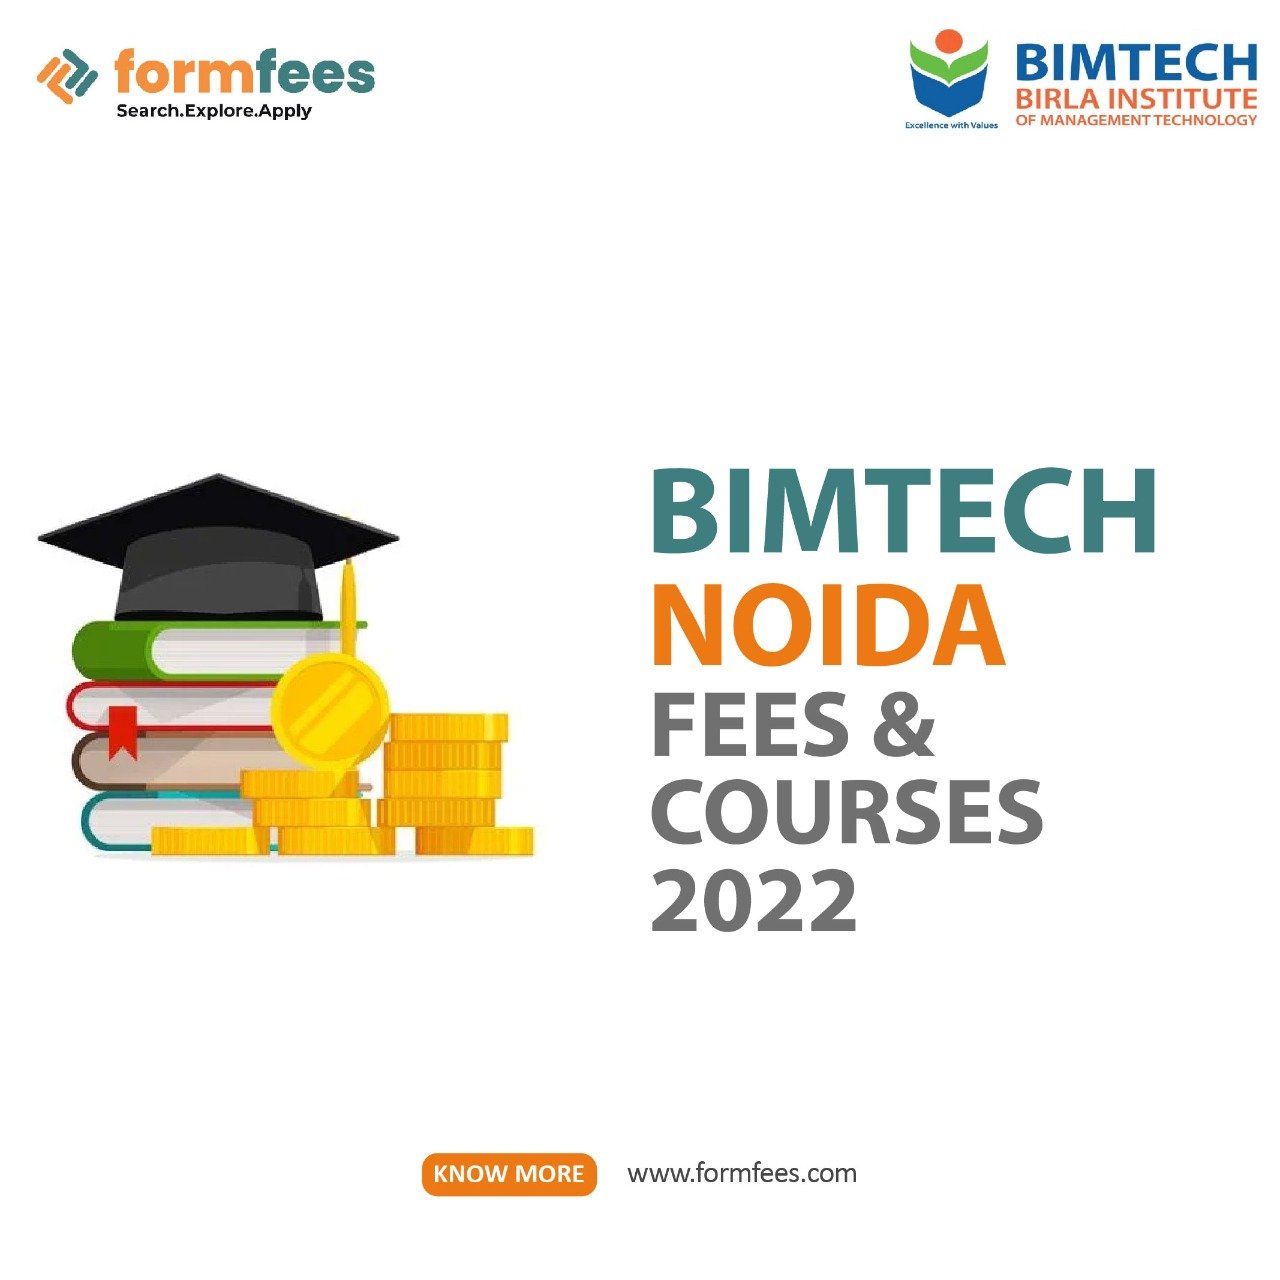 BIMTECH Noida Fees & Courses 2022